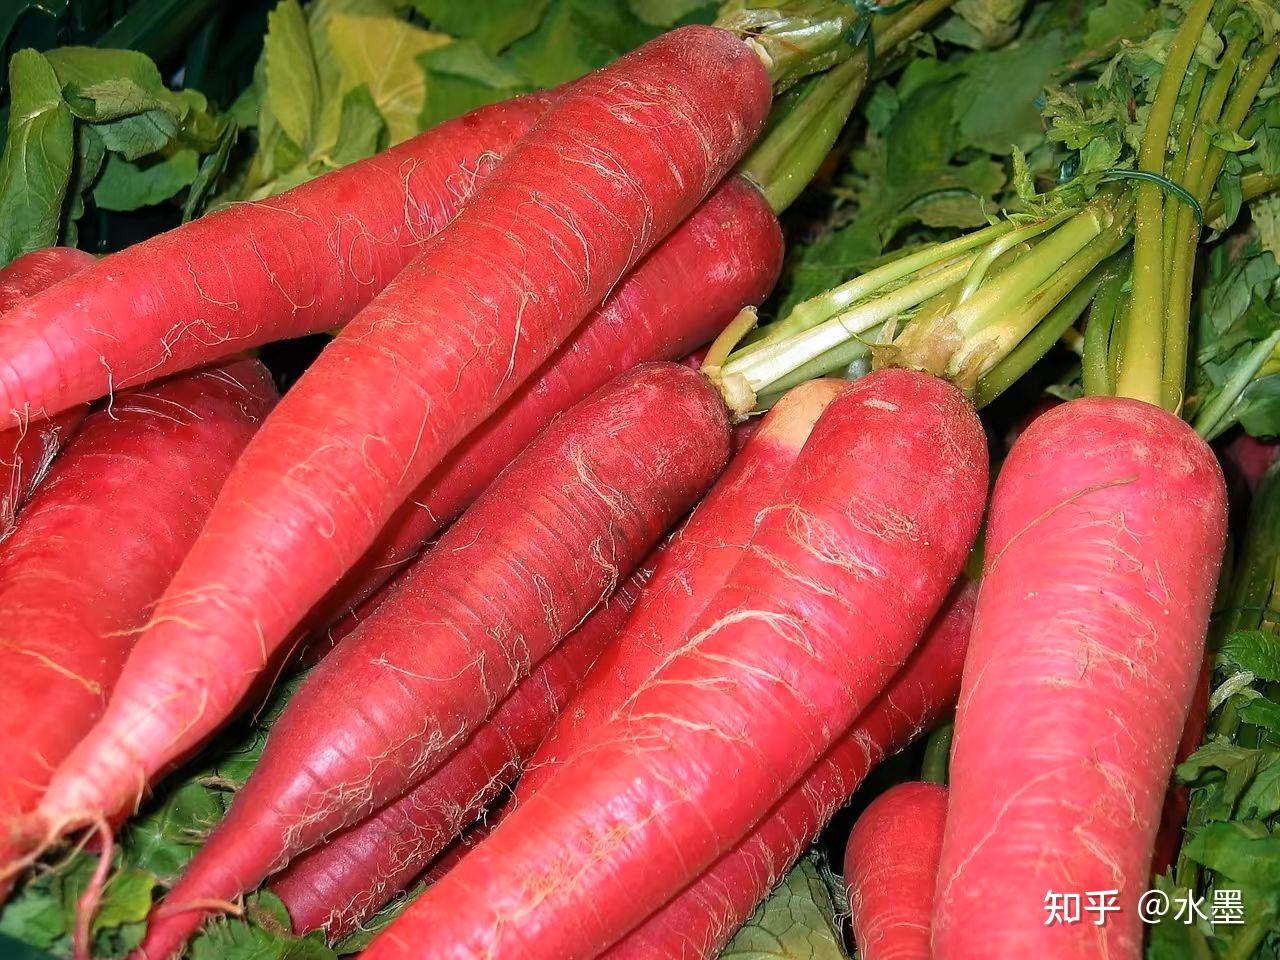 新鲜的红萝卜 库存照片. 图片 包括有 收获, 农事, 市场, 卡车, 蔬菜, 工作者, 种植者, 红萝卜 - 16060814